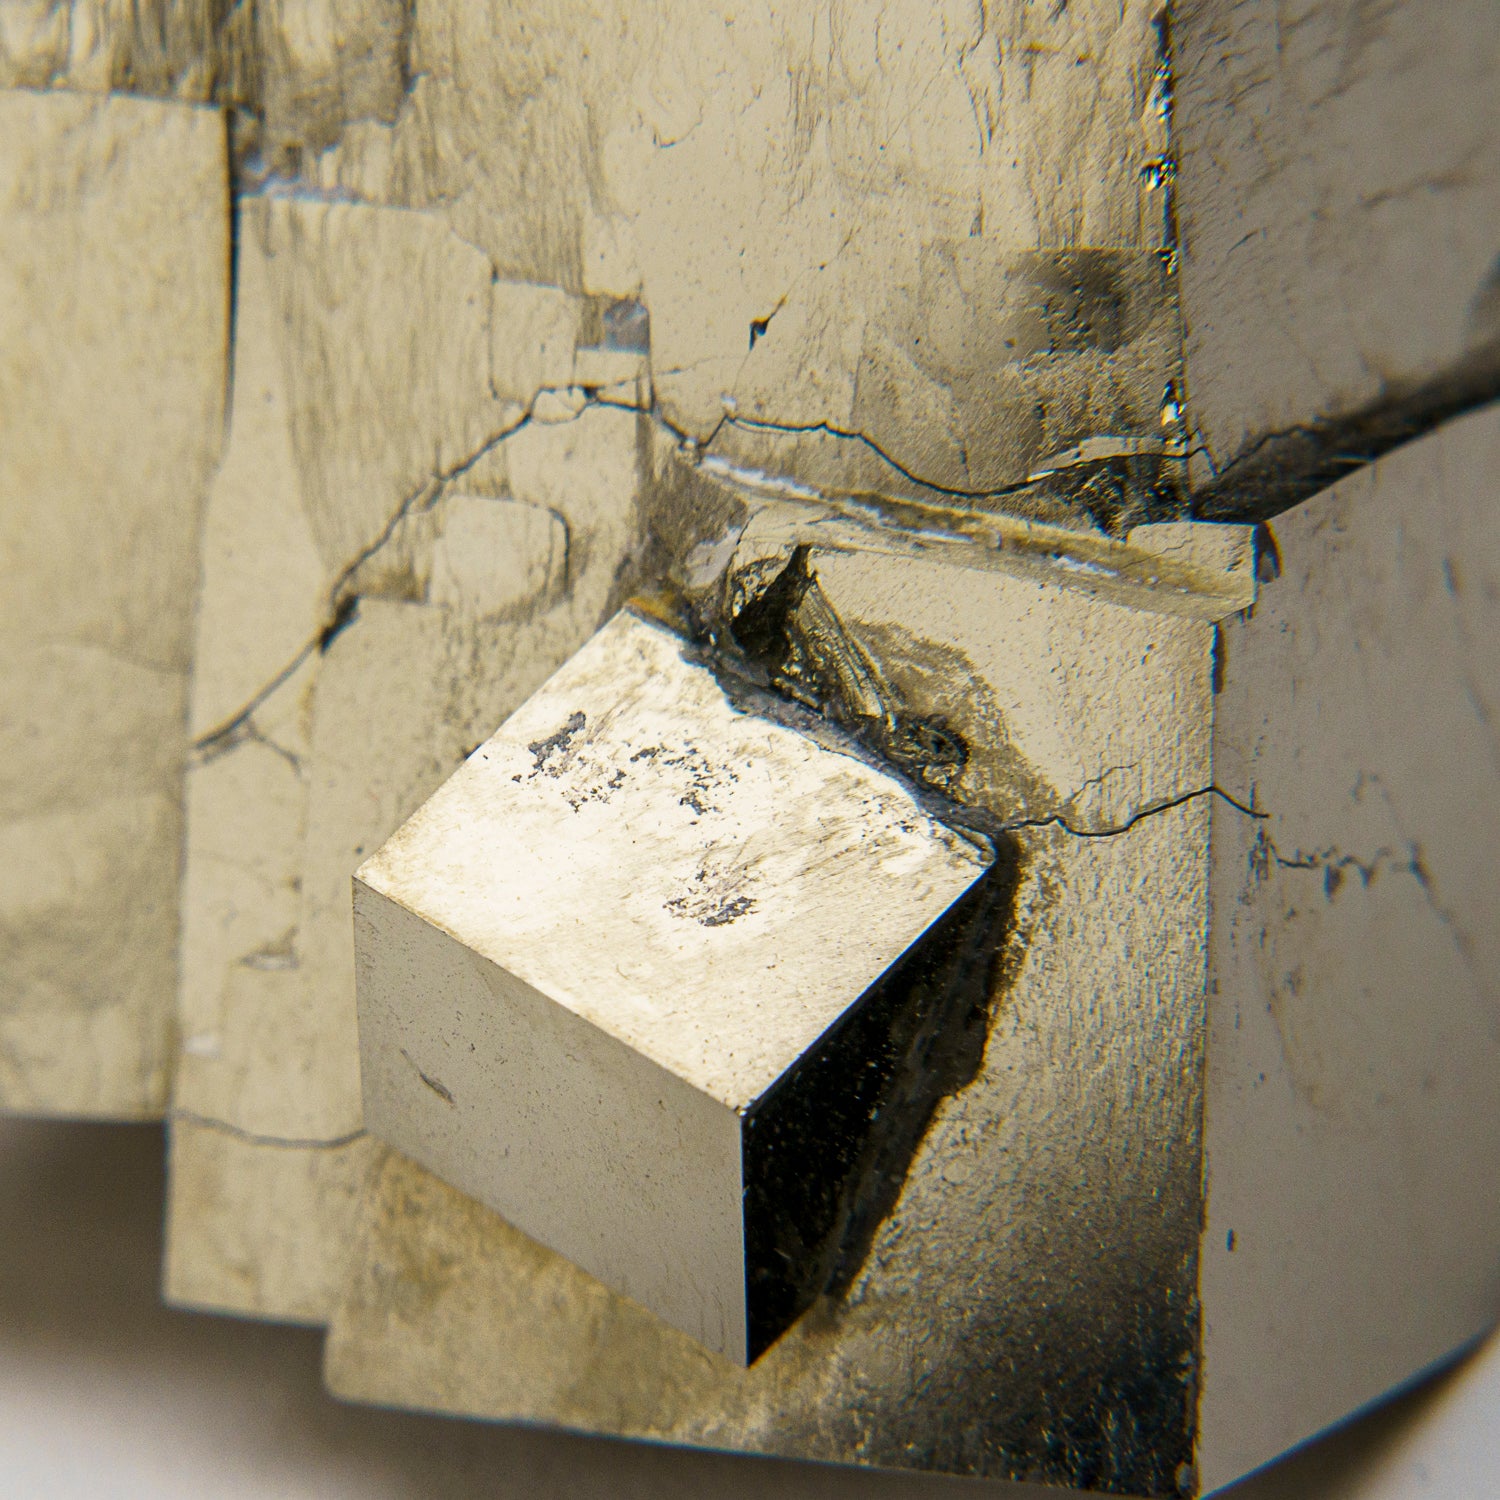 Pyrite Cube from Navajún, La Rioja Province, Spain (218 grams)